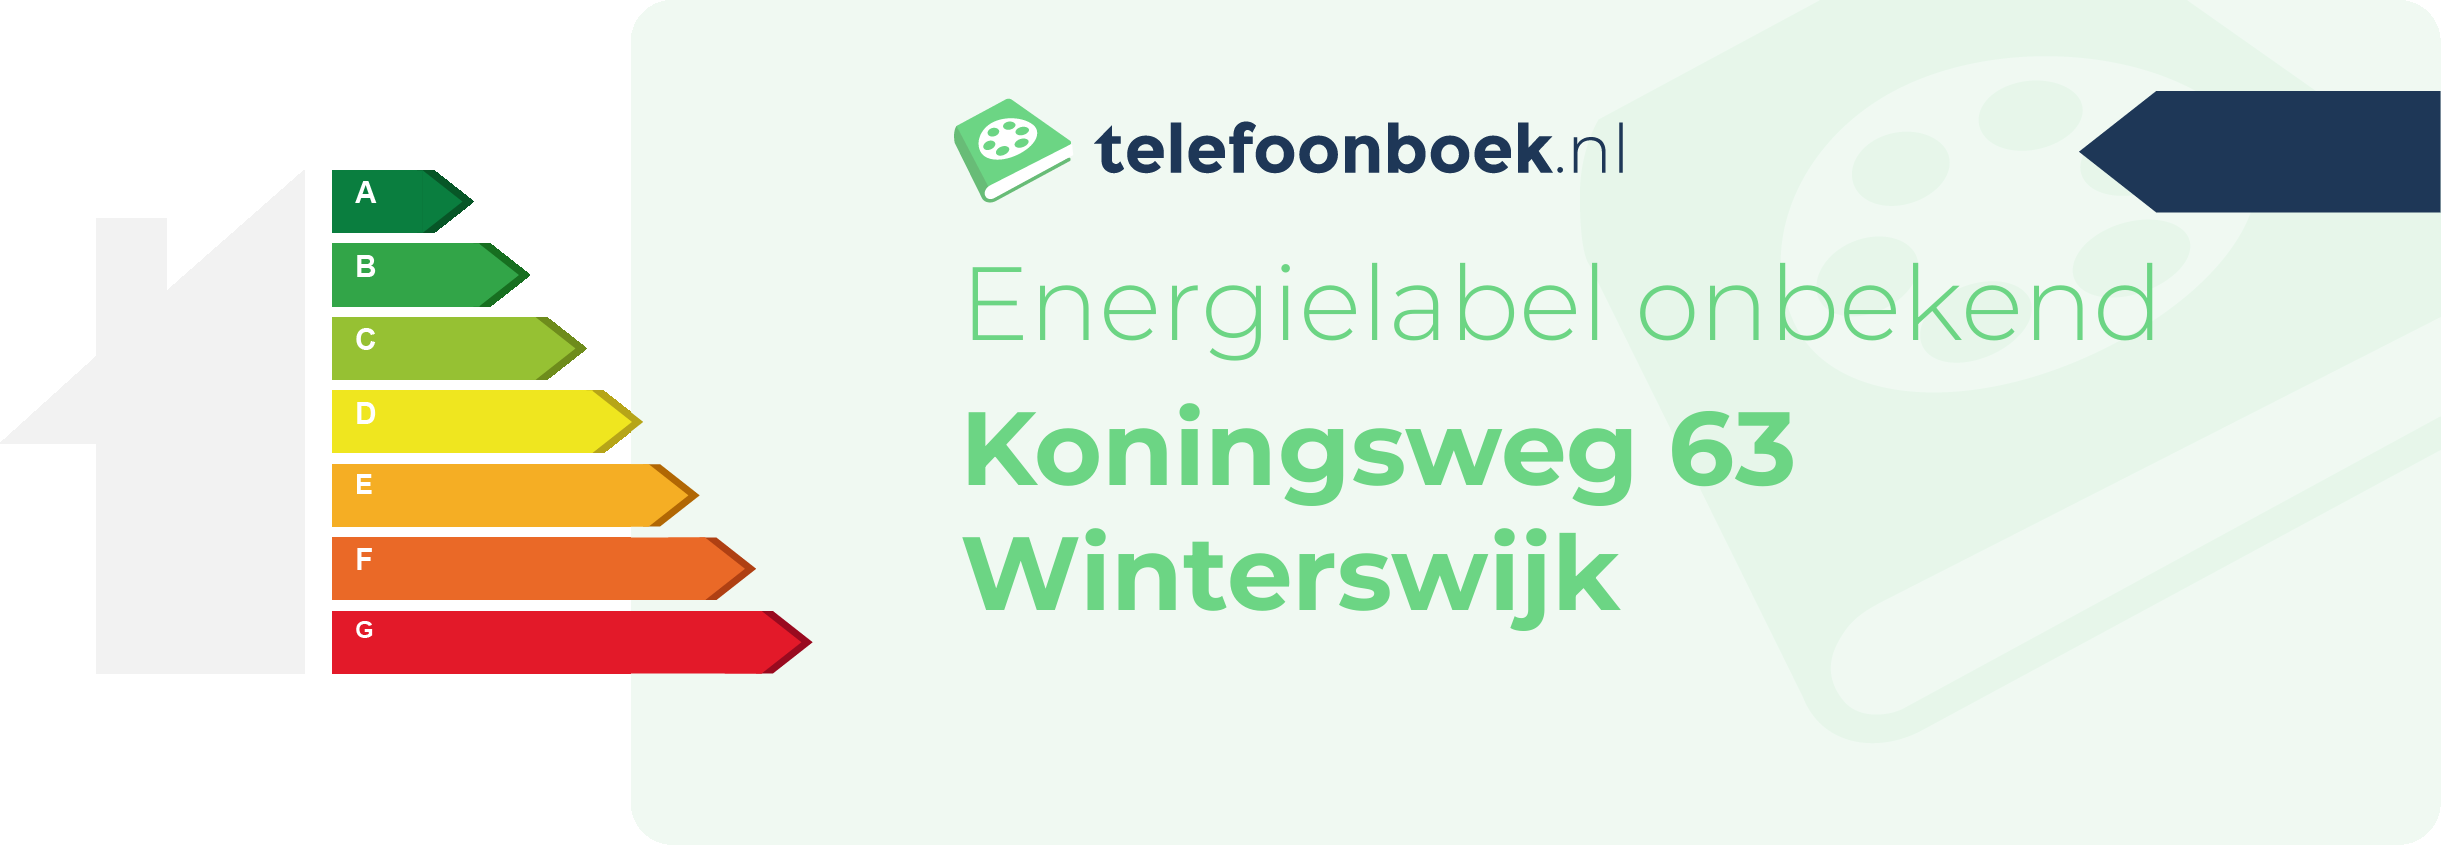 Energielabel Koningsweg 63 Winterswijk